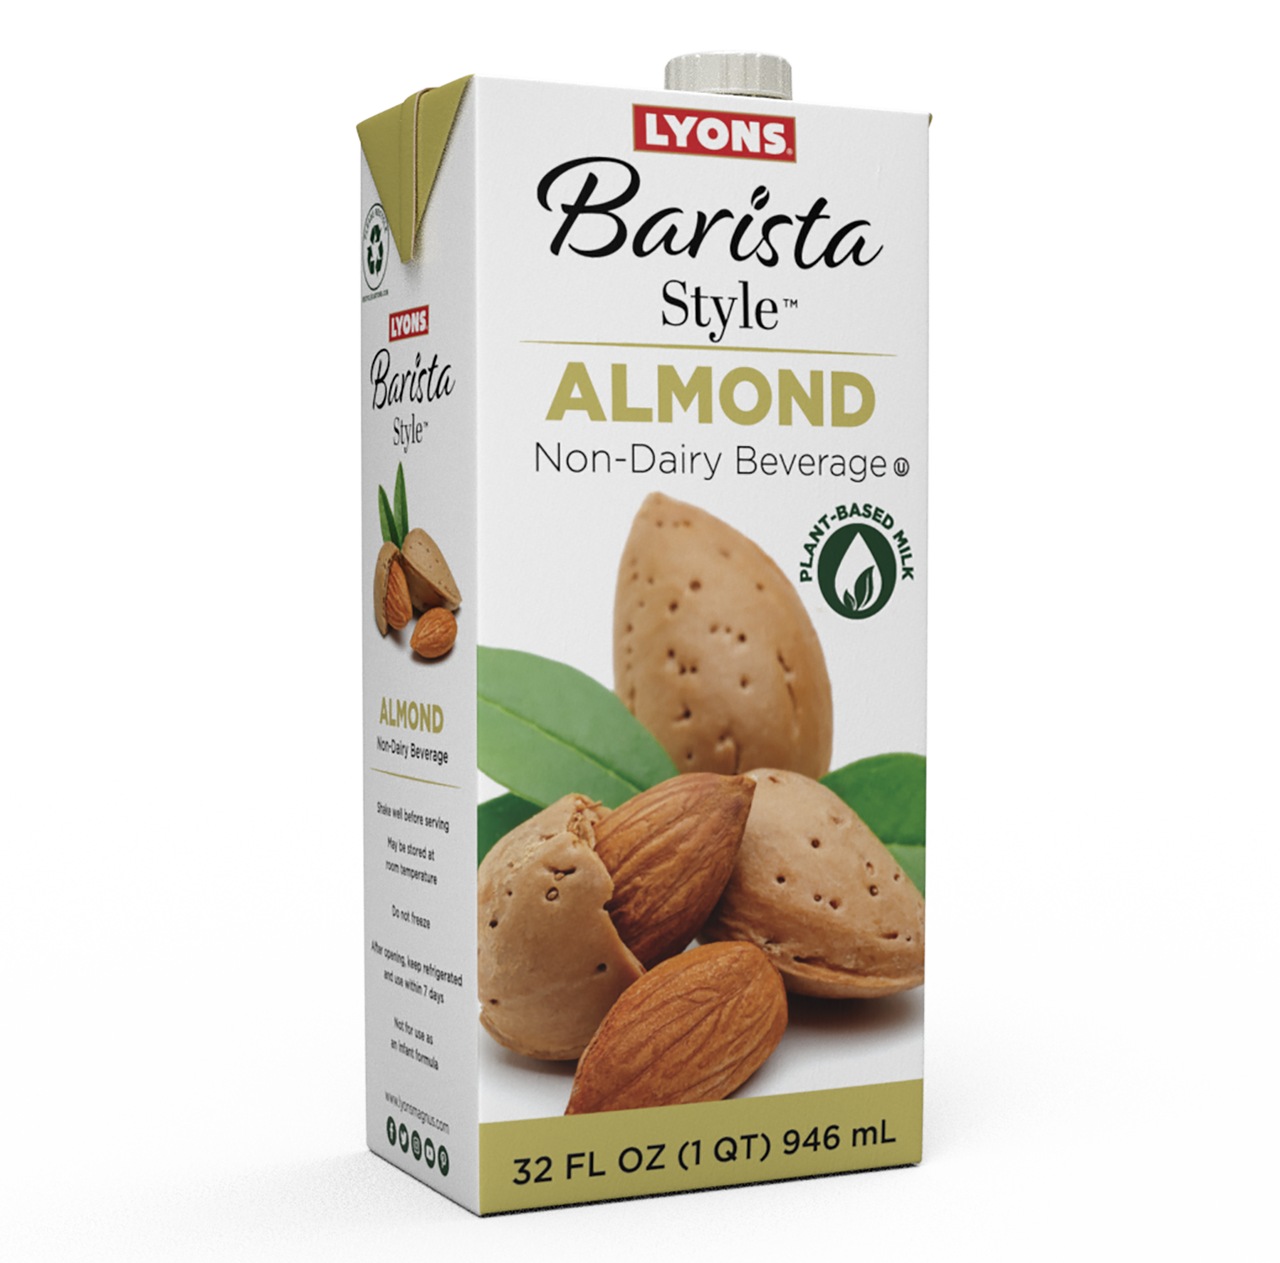 Barista Style™ Almond Milk